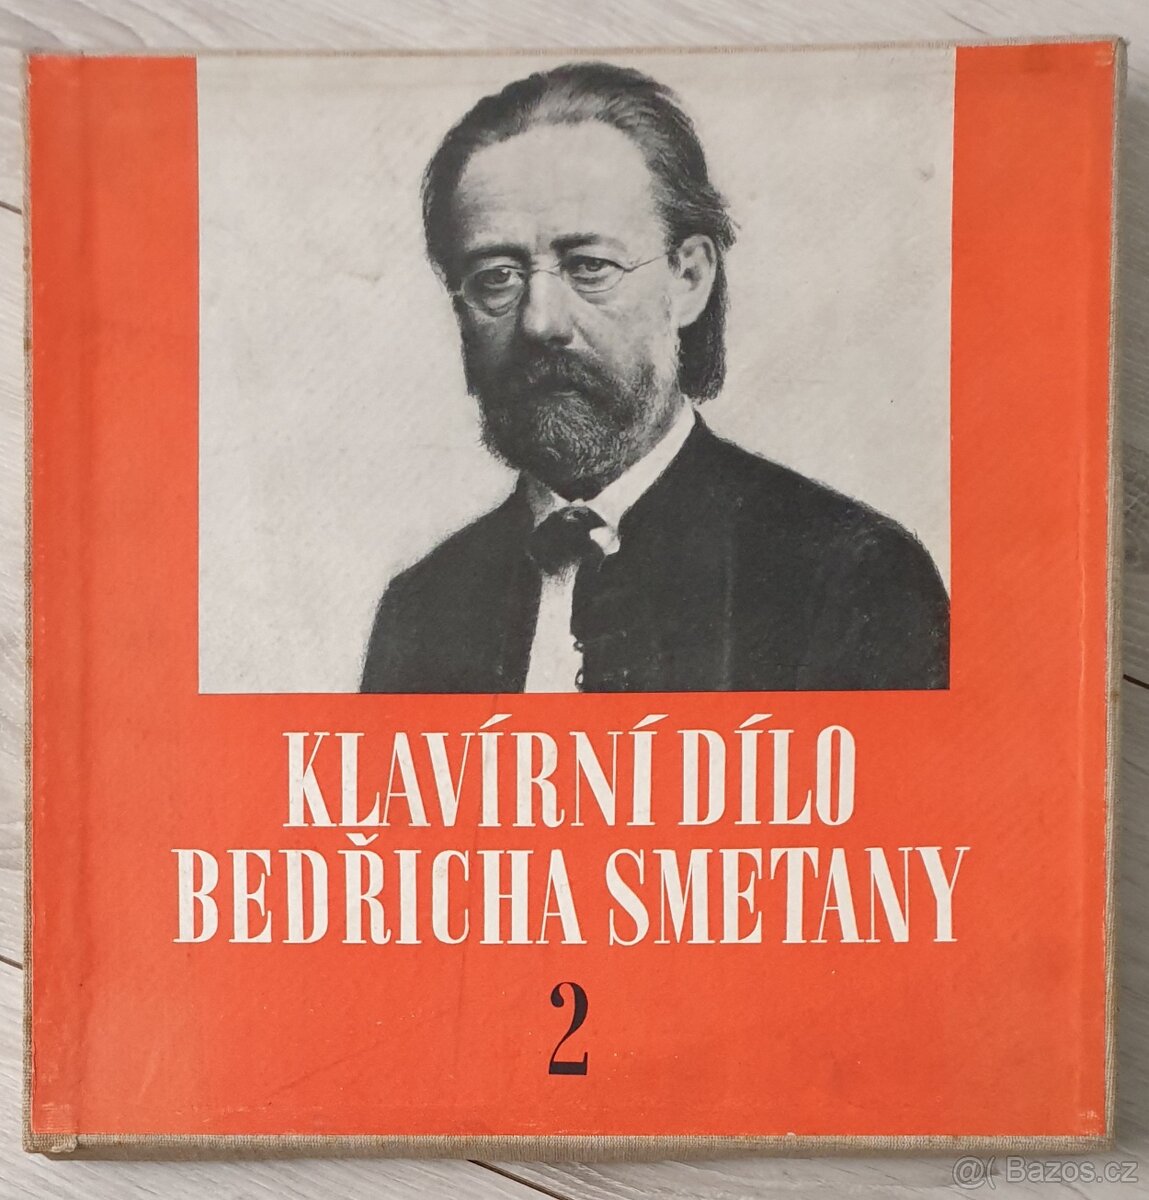 Klavírní dílo Bedřicha Smetany II.